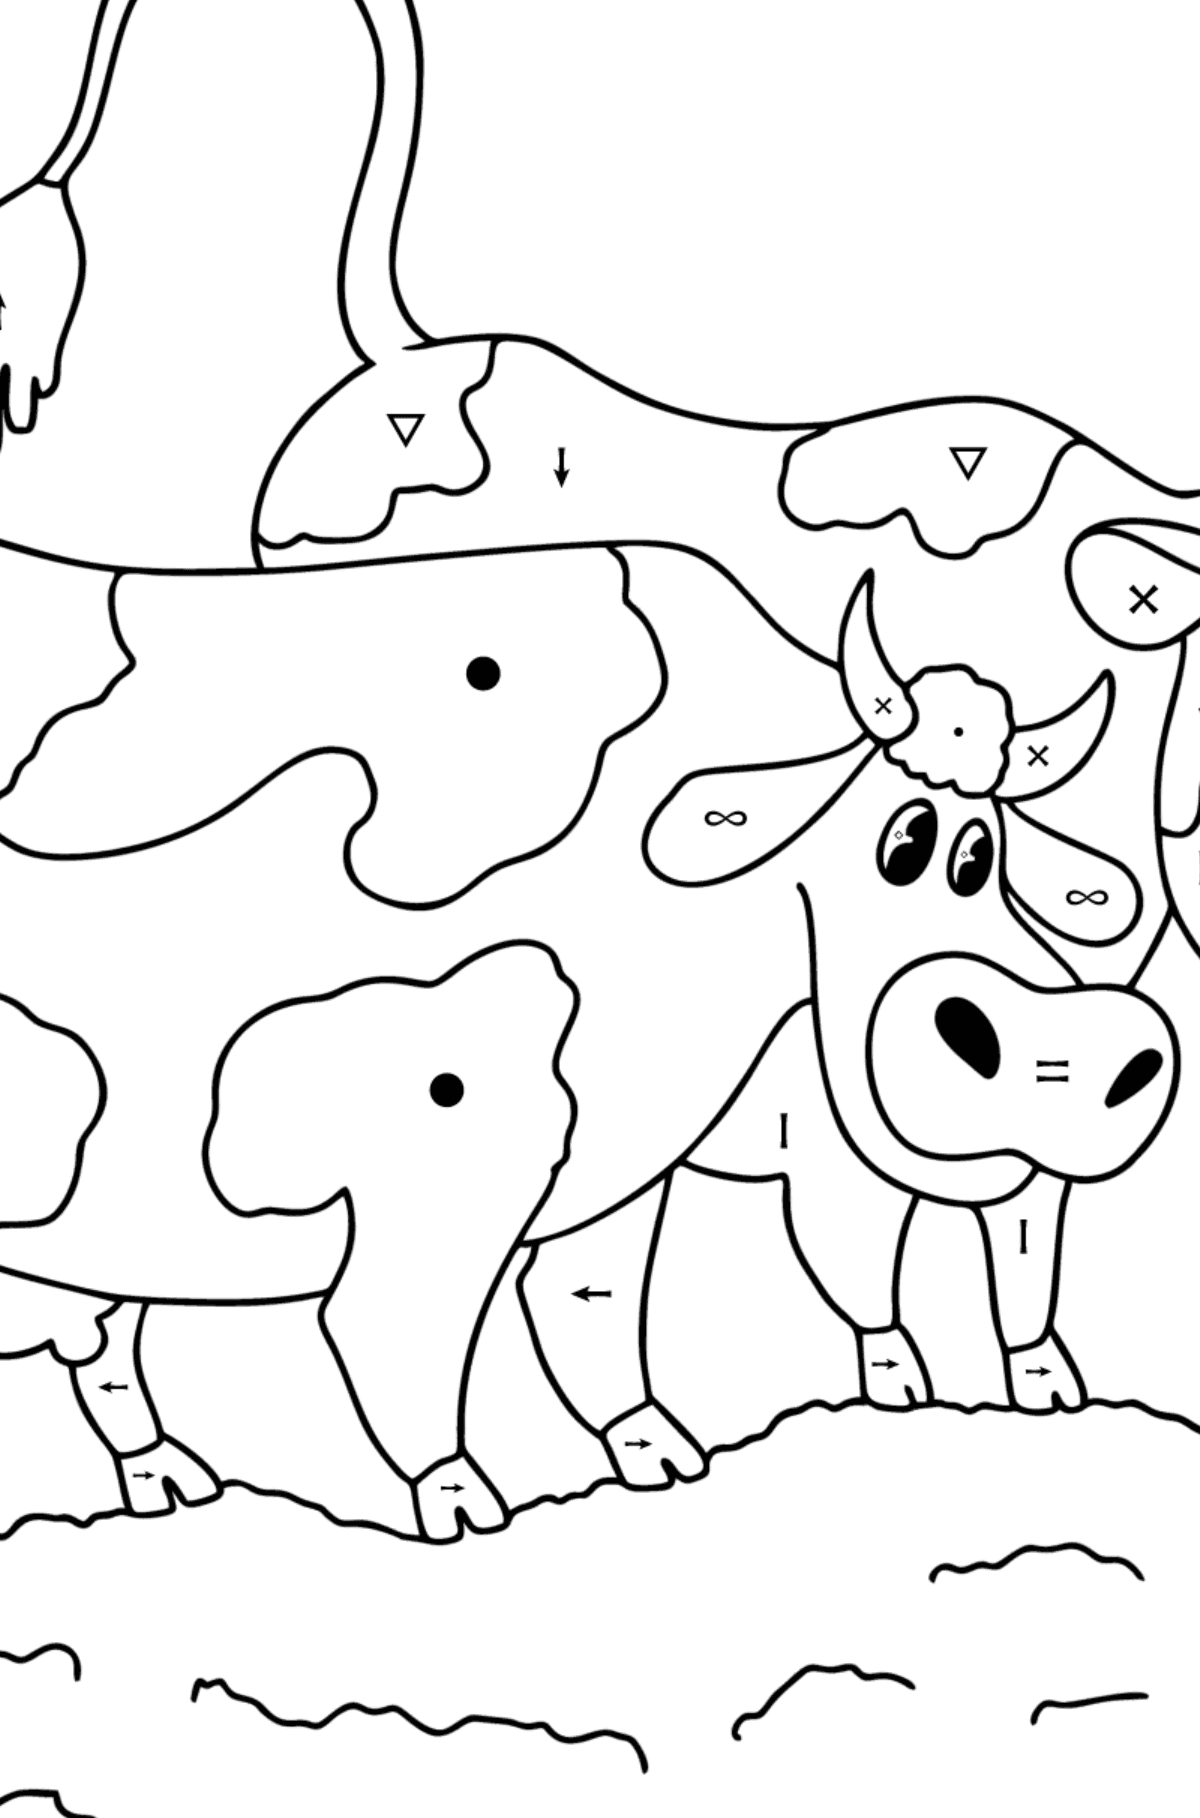 Tegning til fargelegging To kyr på enga - Fargelegge etter symboler for barn